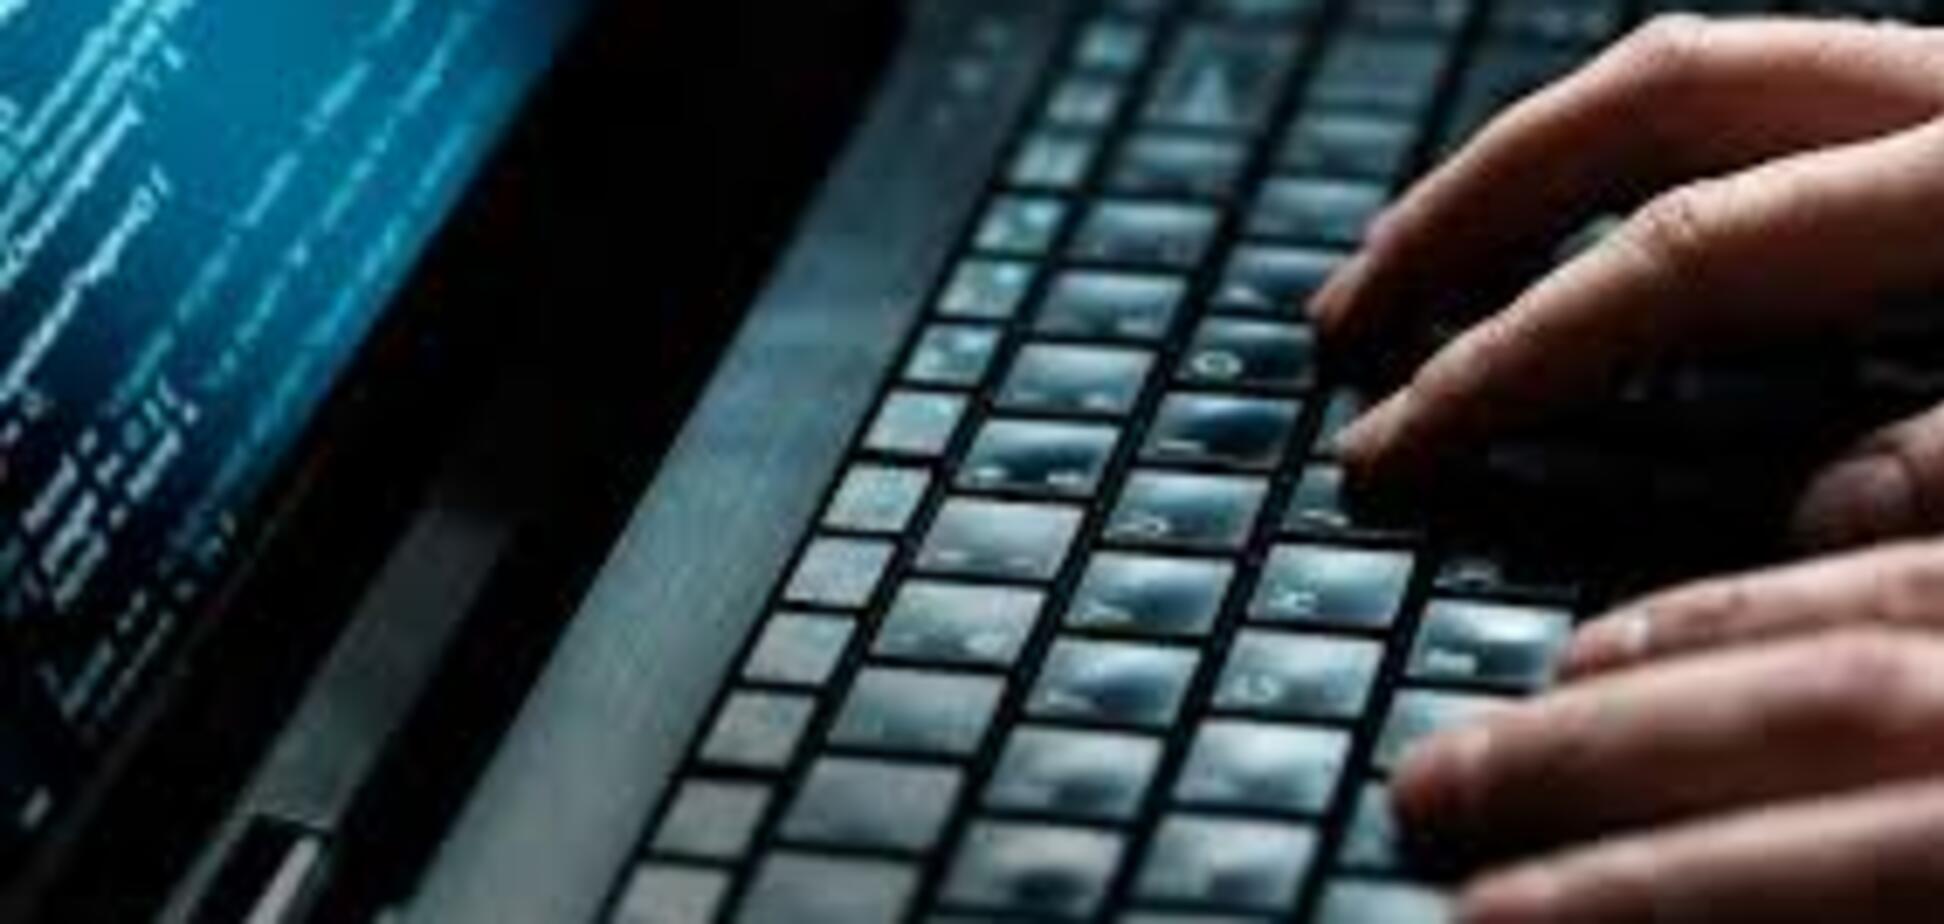 СБУ предупреждает о новой кибератаке 